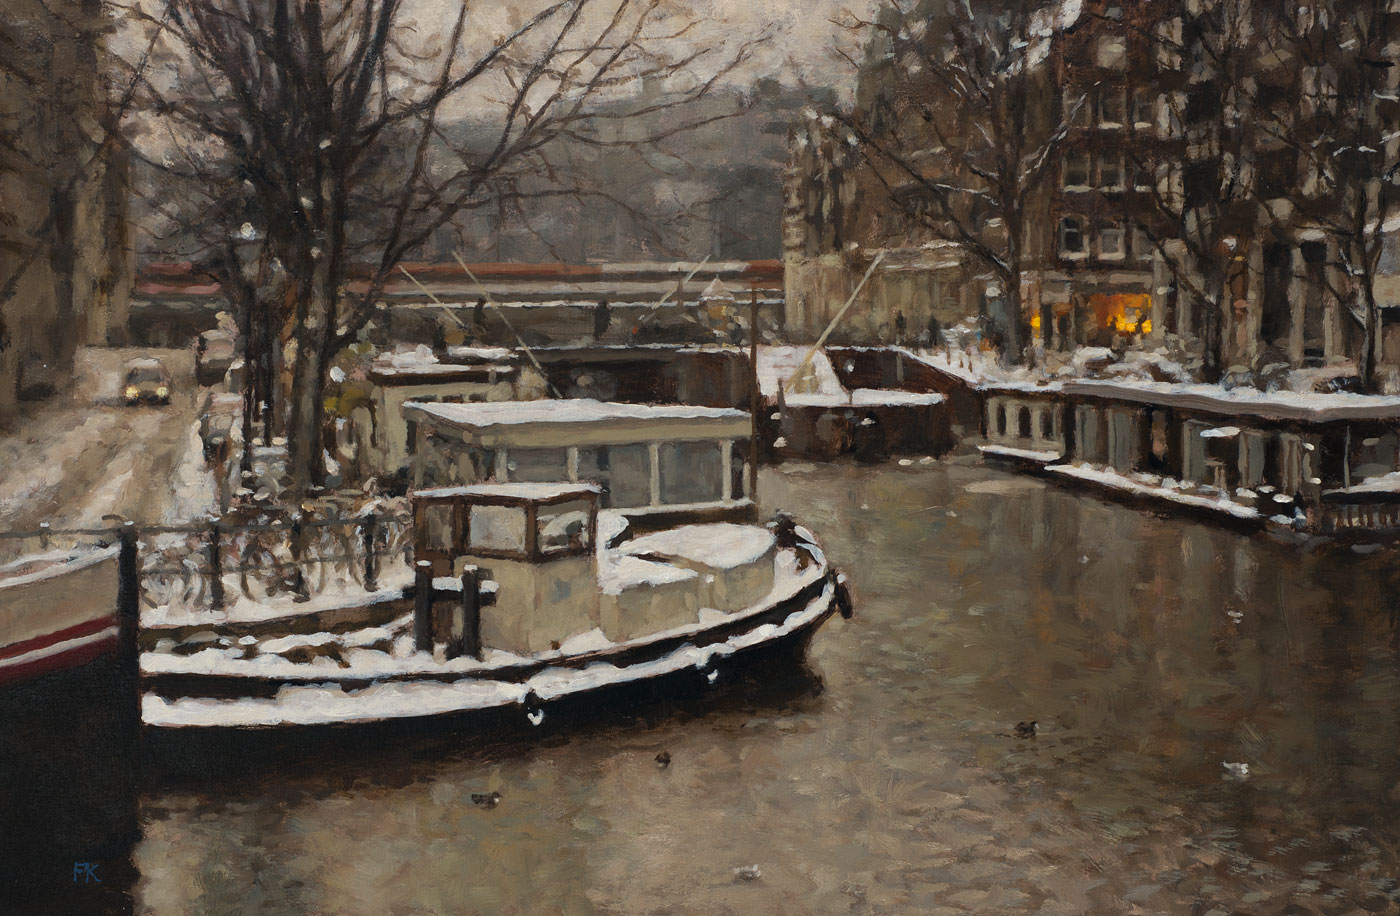 cityscape: 'Winter in Amsterdam' oil on linnen by Dutch painter Frans Koppelaar.